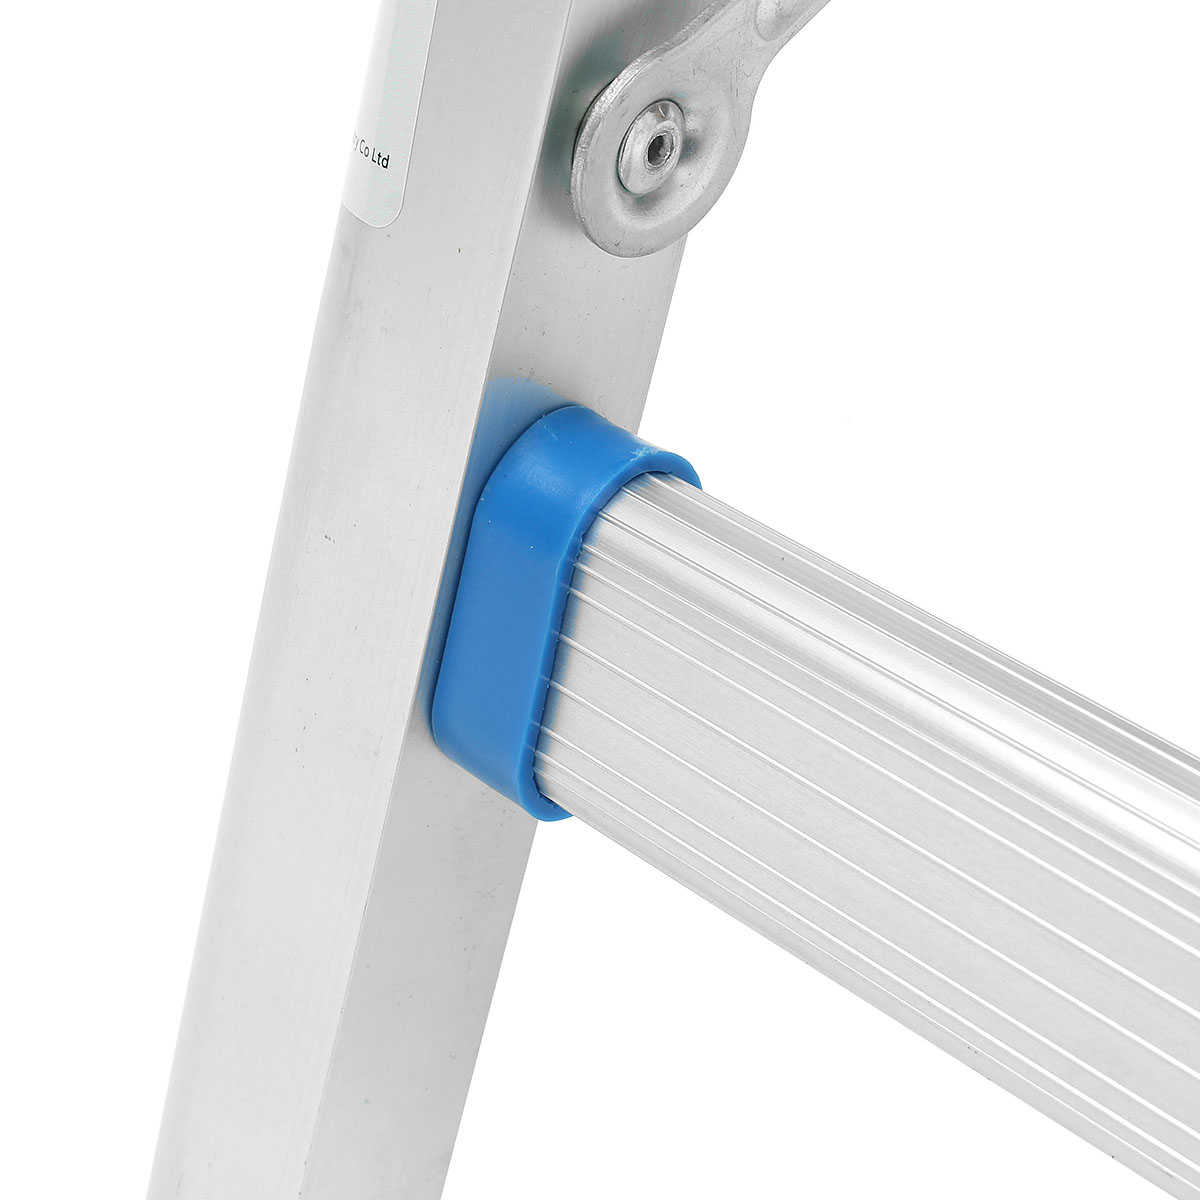 Aimeeli 2 Step Aluminum Folding Ladder Platform Work Stool 330lbs/150kg Load Capacity Safe